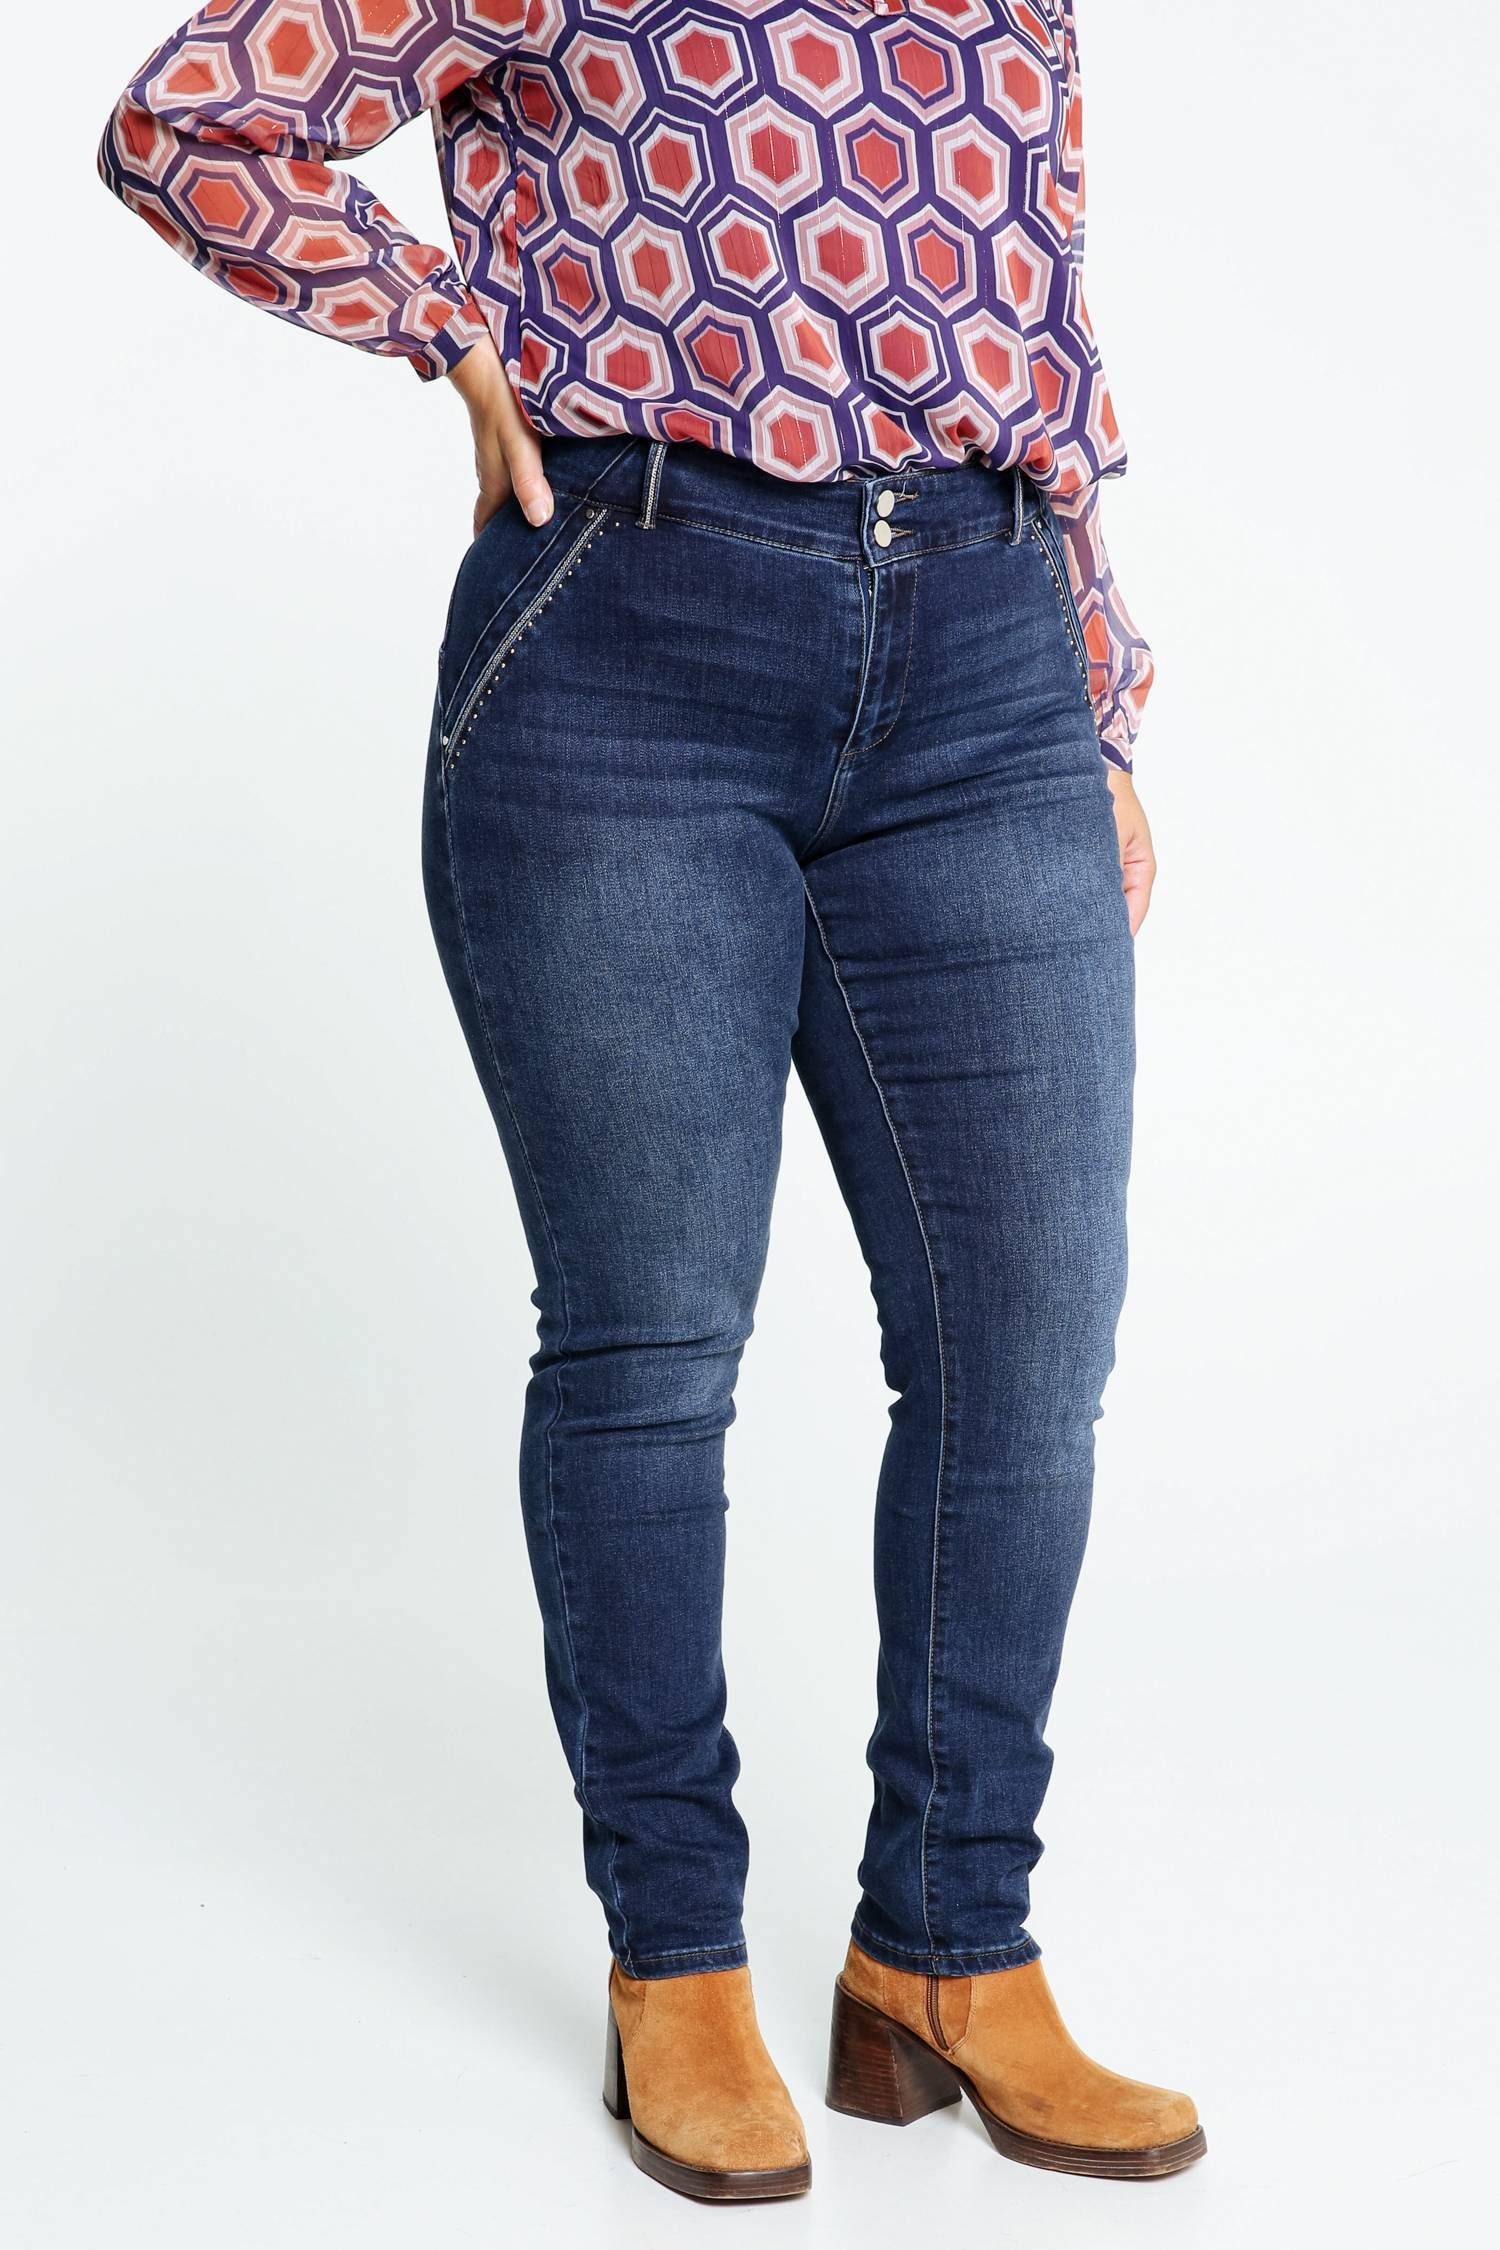 Paprika 5-Pocket-Jeans Slim-Fit-Jeans Louise L32 Mit Push-Up